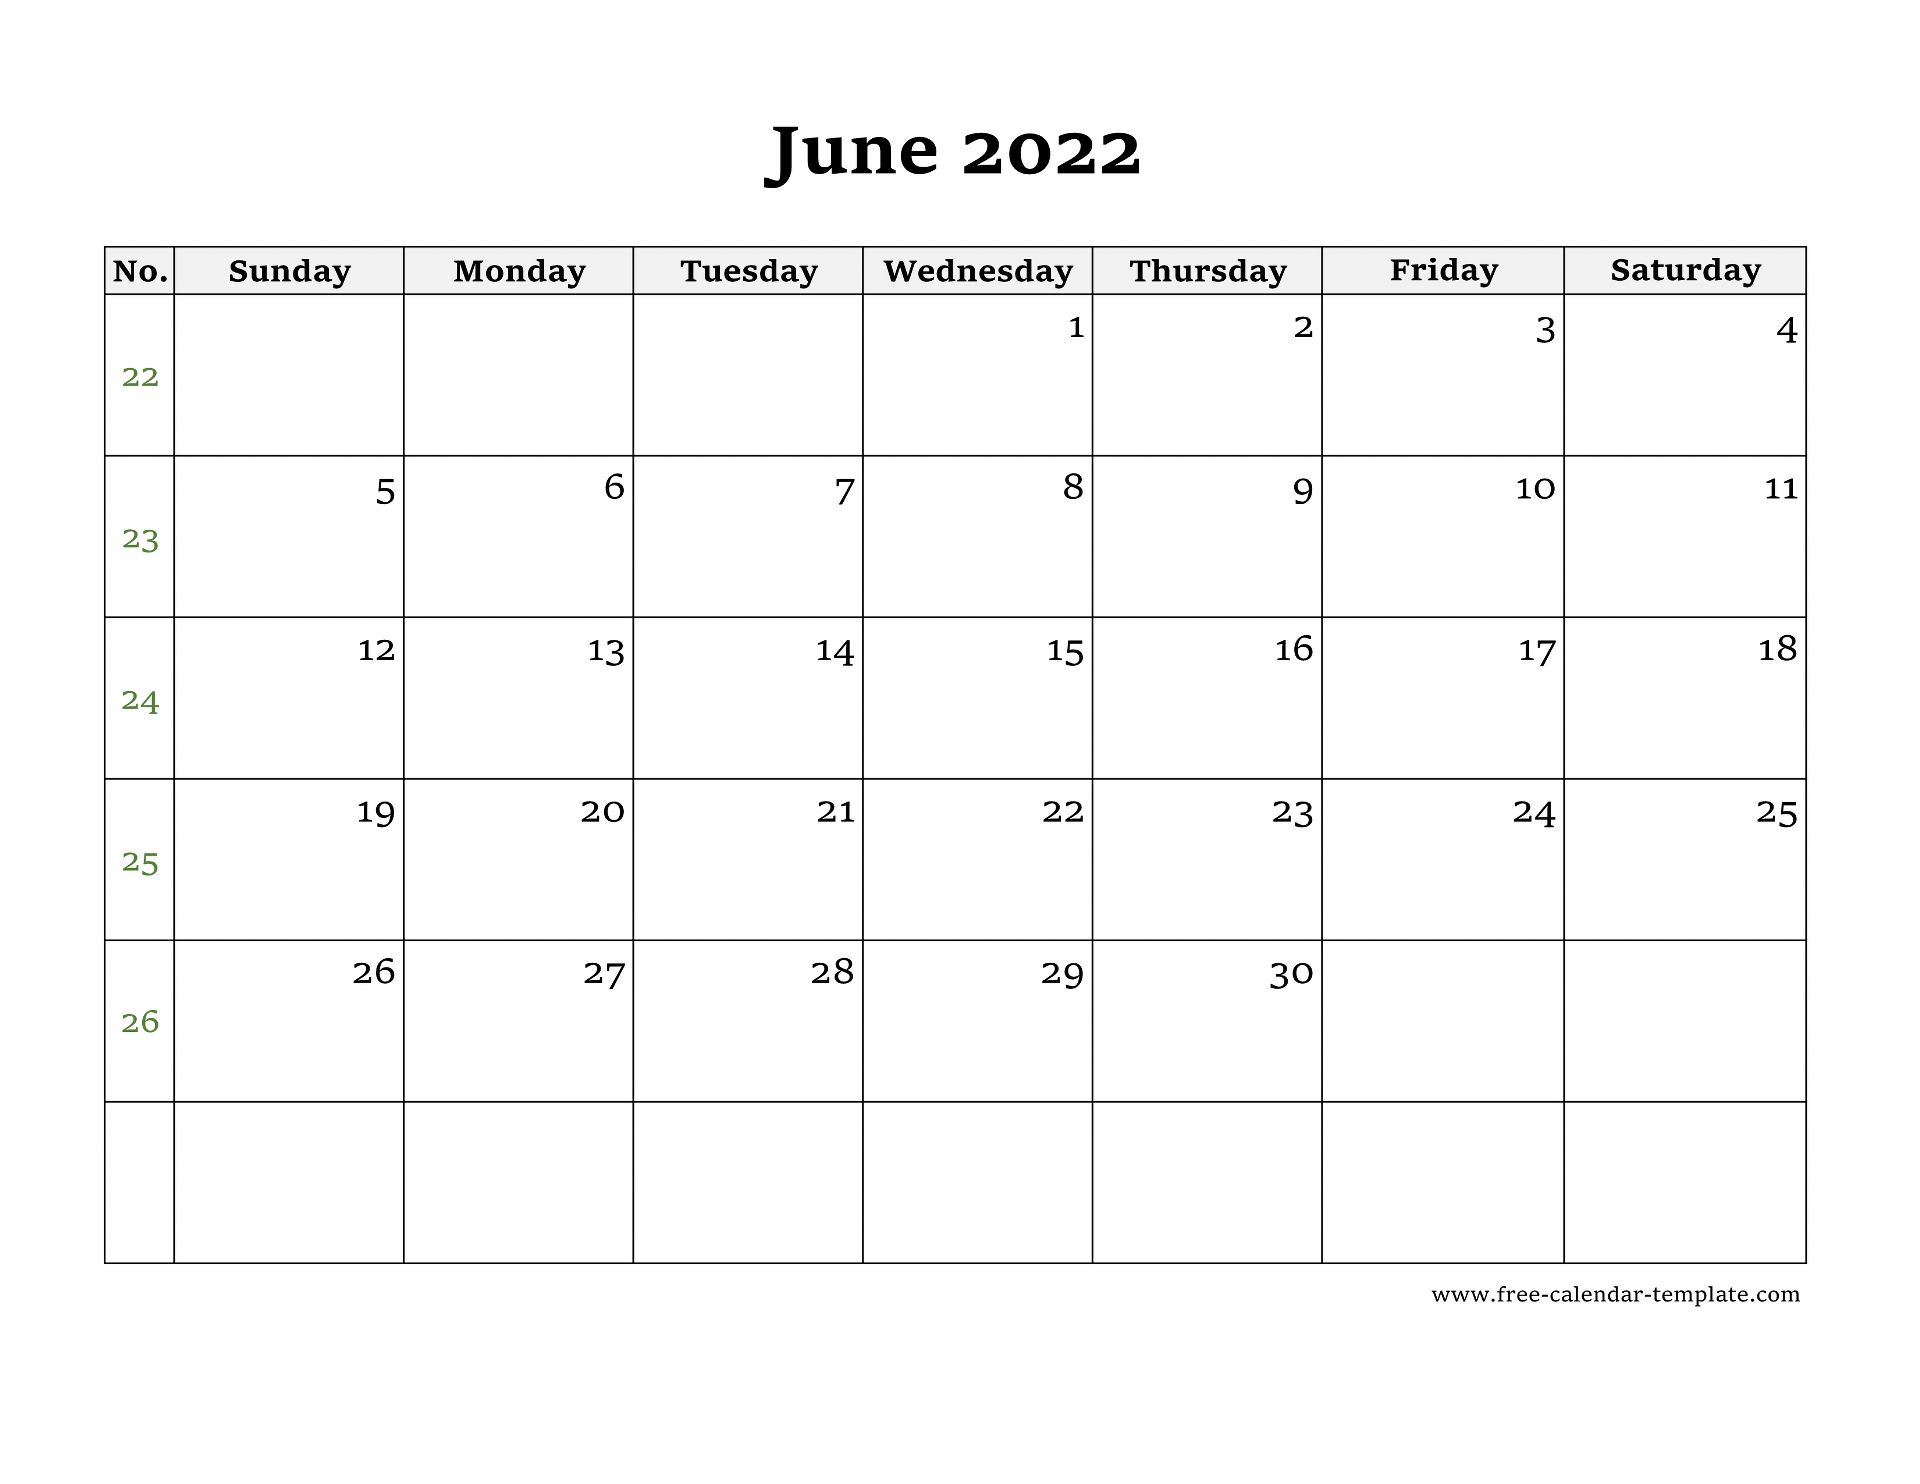 June 2022 Free Calendar Tempplate | Free-Calendar-Template